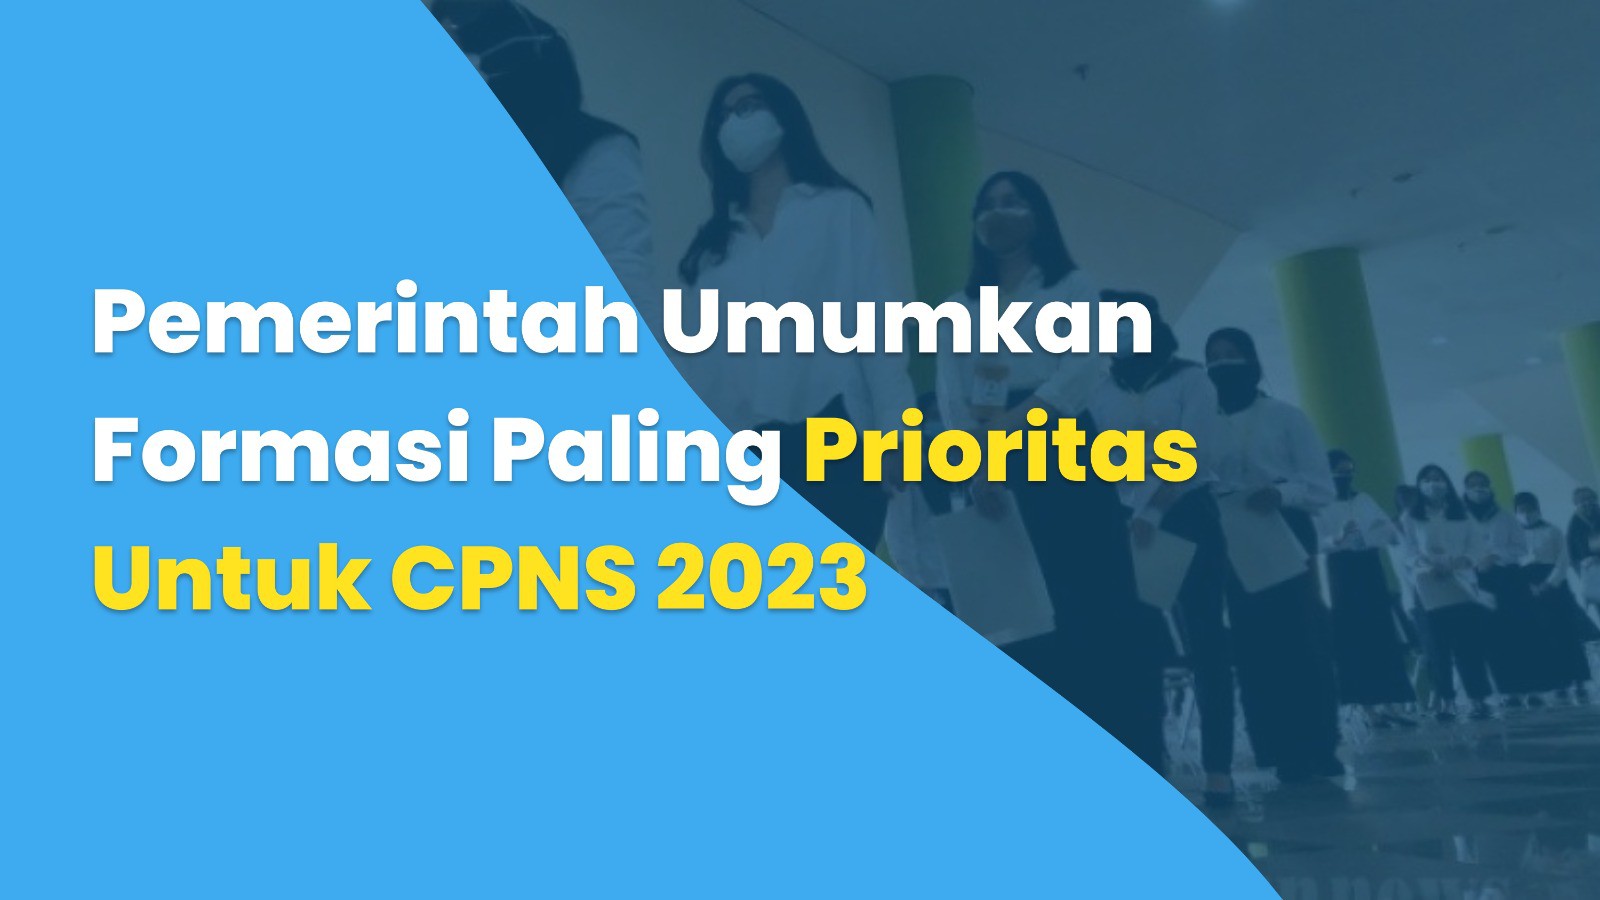 Pemerintah Umumkan Formasi Paling Prioritas Untuk CPNS 2023